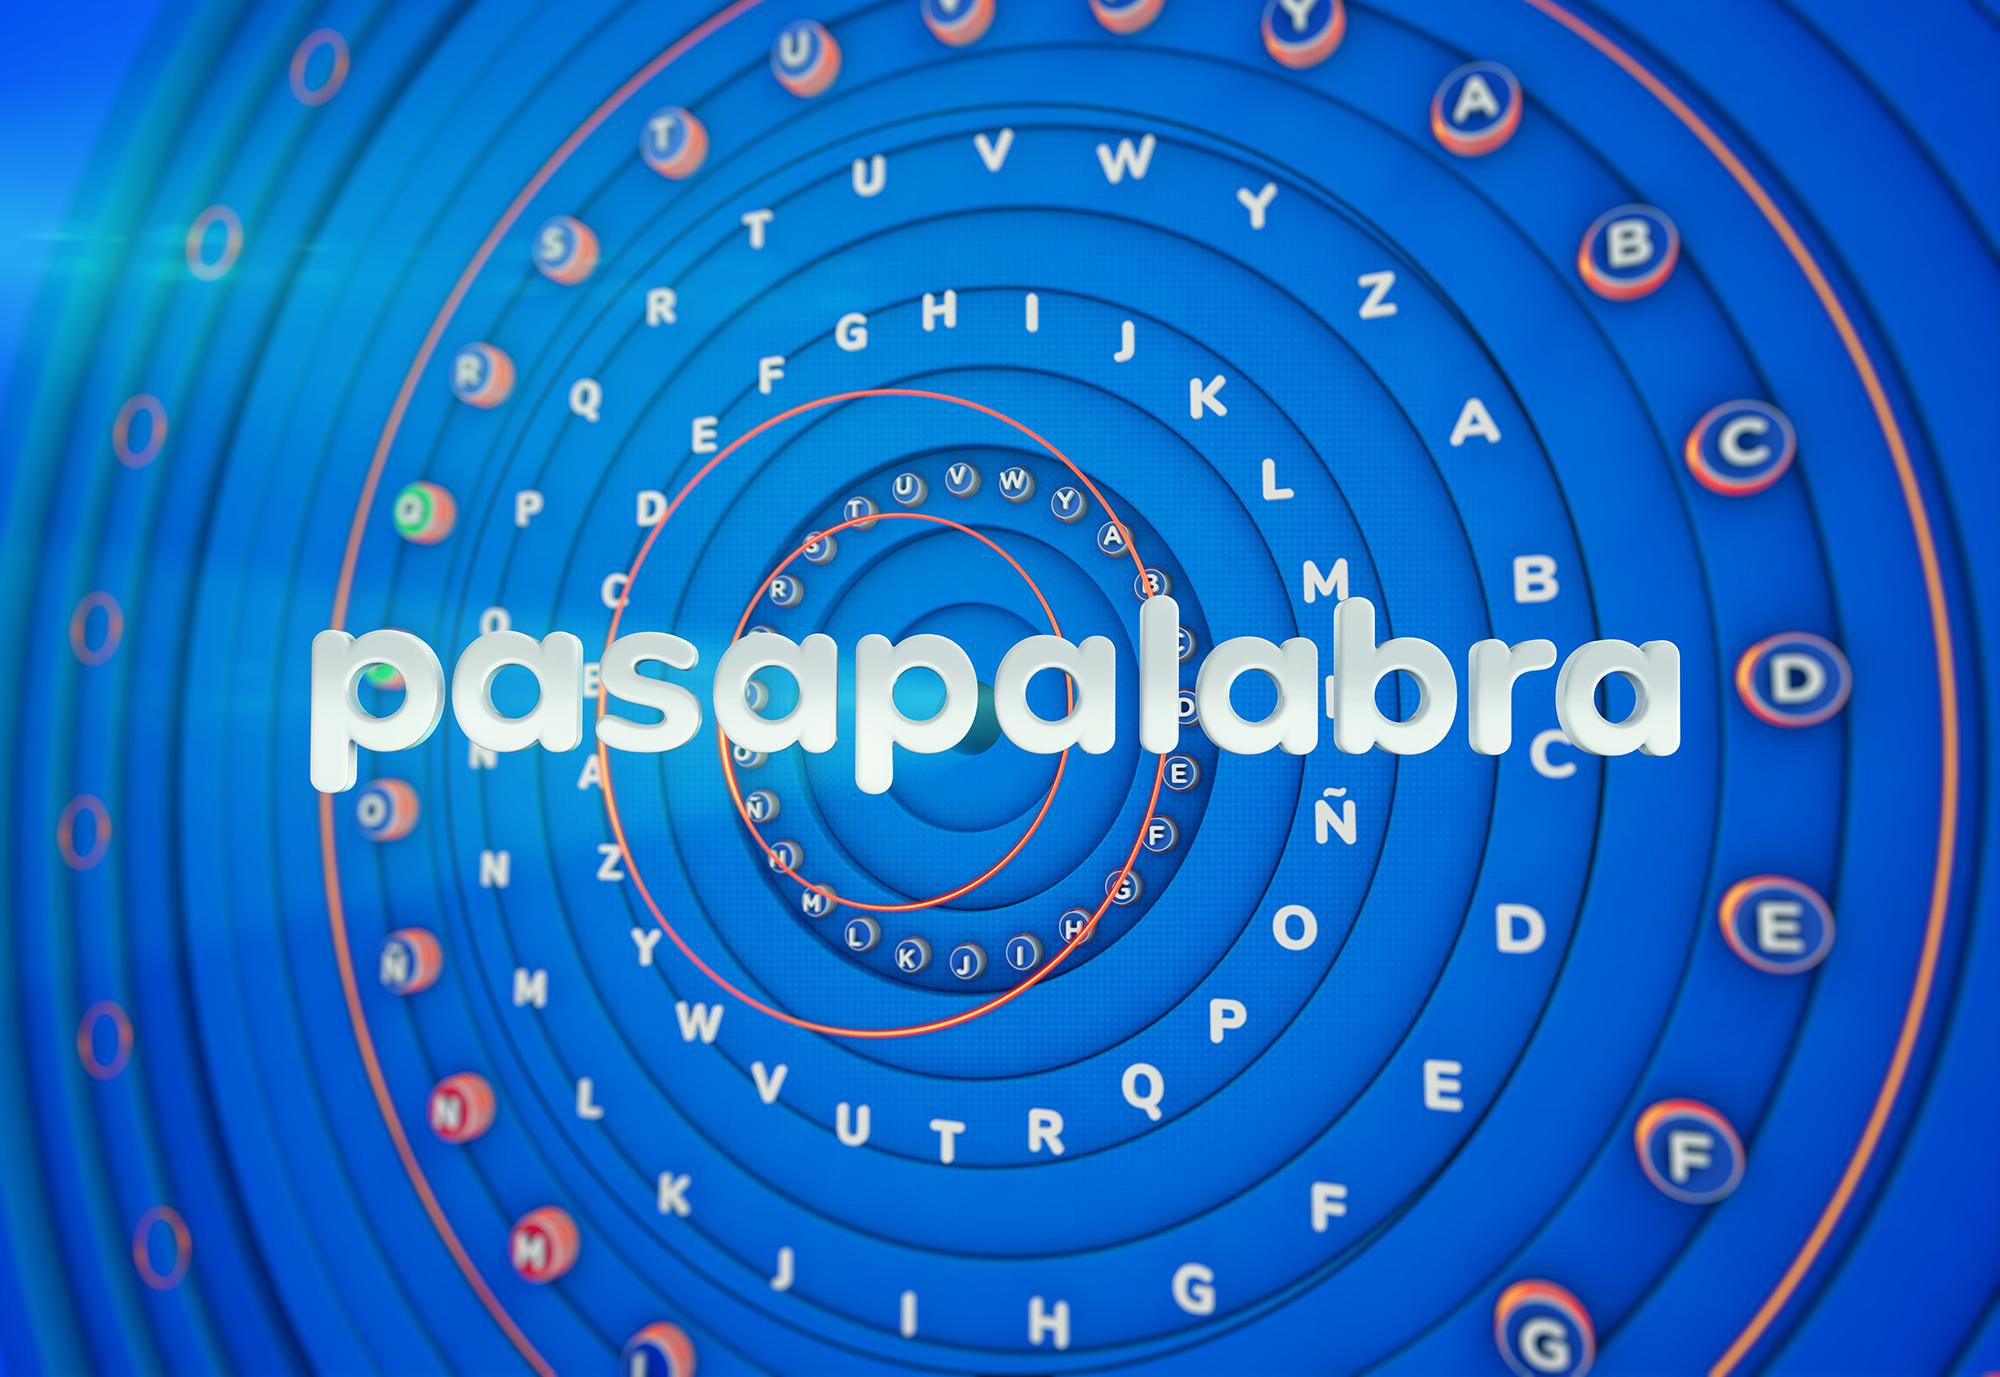 Nuevo logo de Pasapalabra